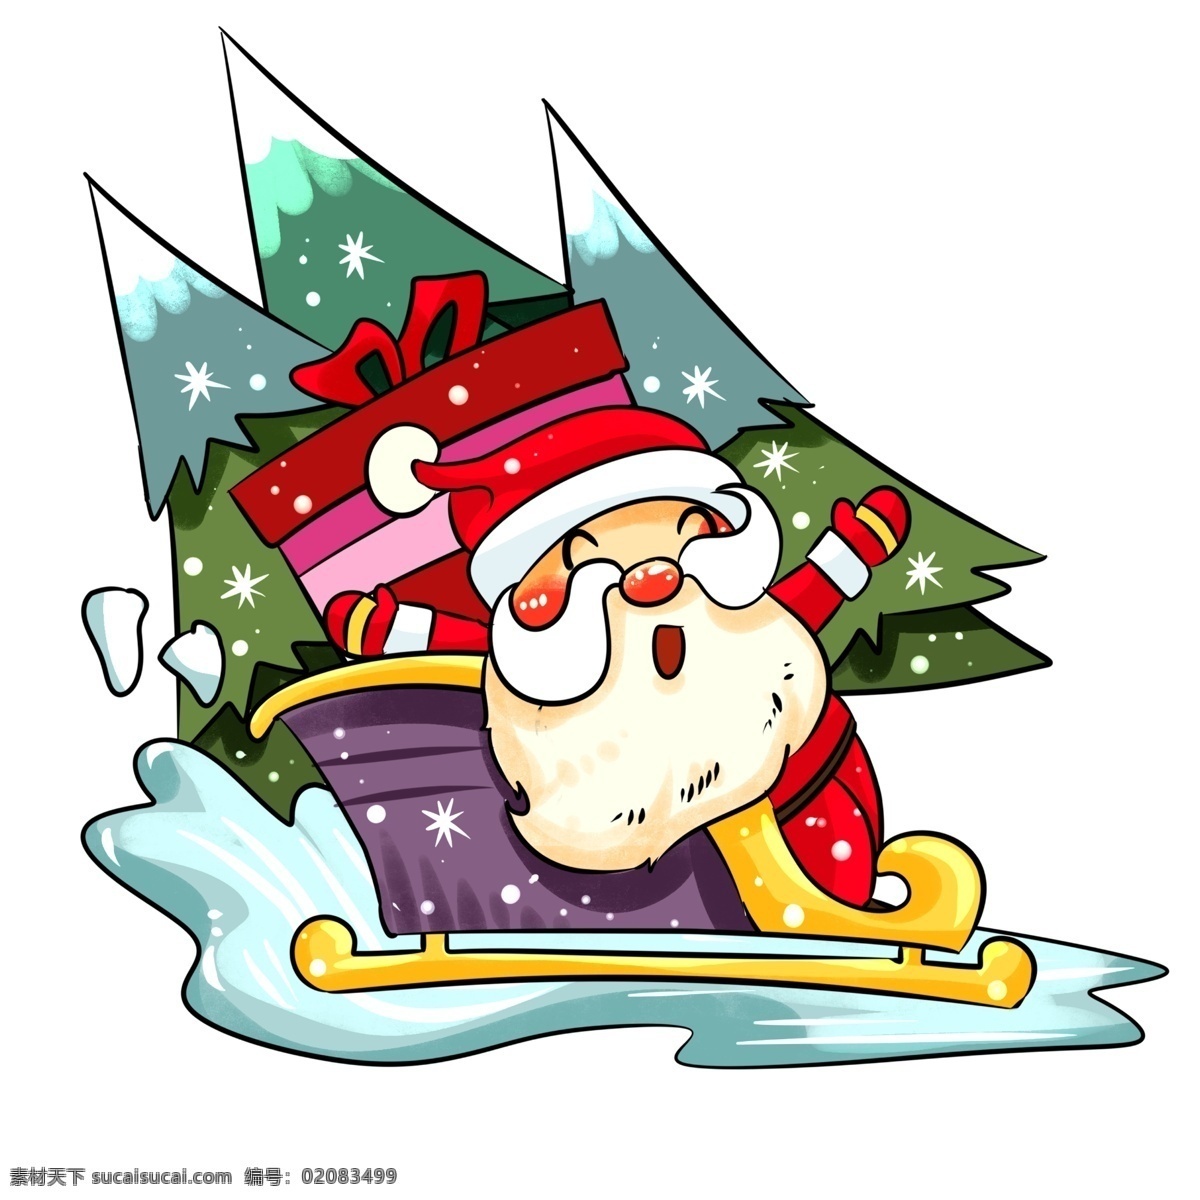 圣诞节 圣诞老人 雪橇 车 手绘 插画 手绘送礼物 礼物 圣诞节雪人 雪人 收礼 物 小朋友